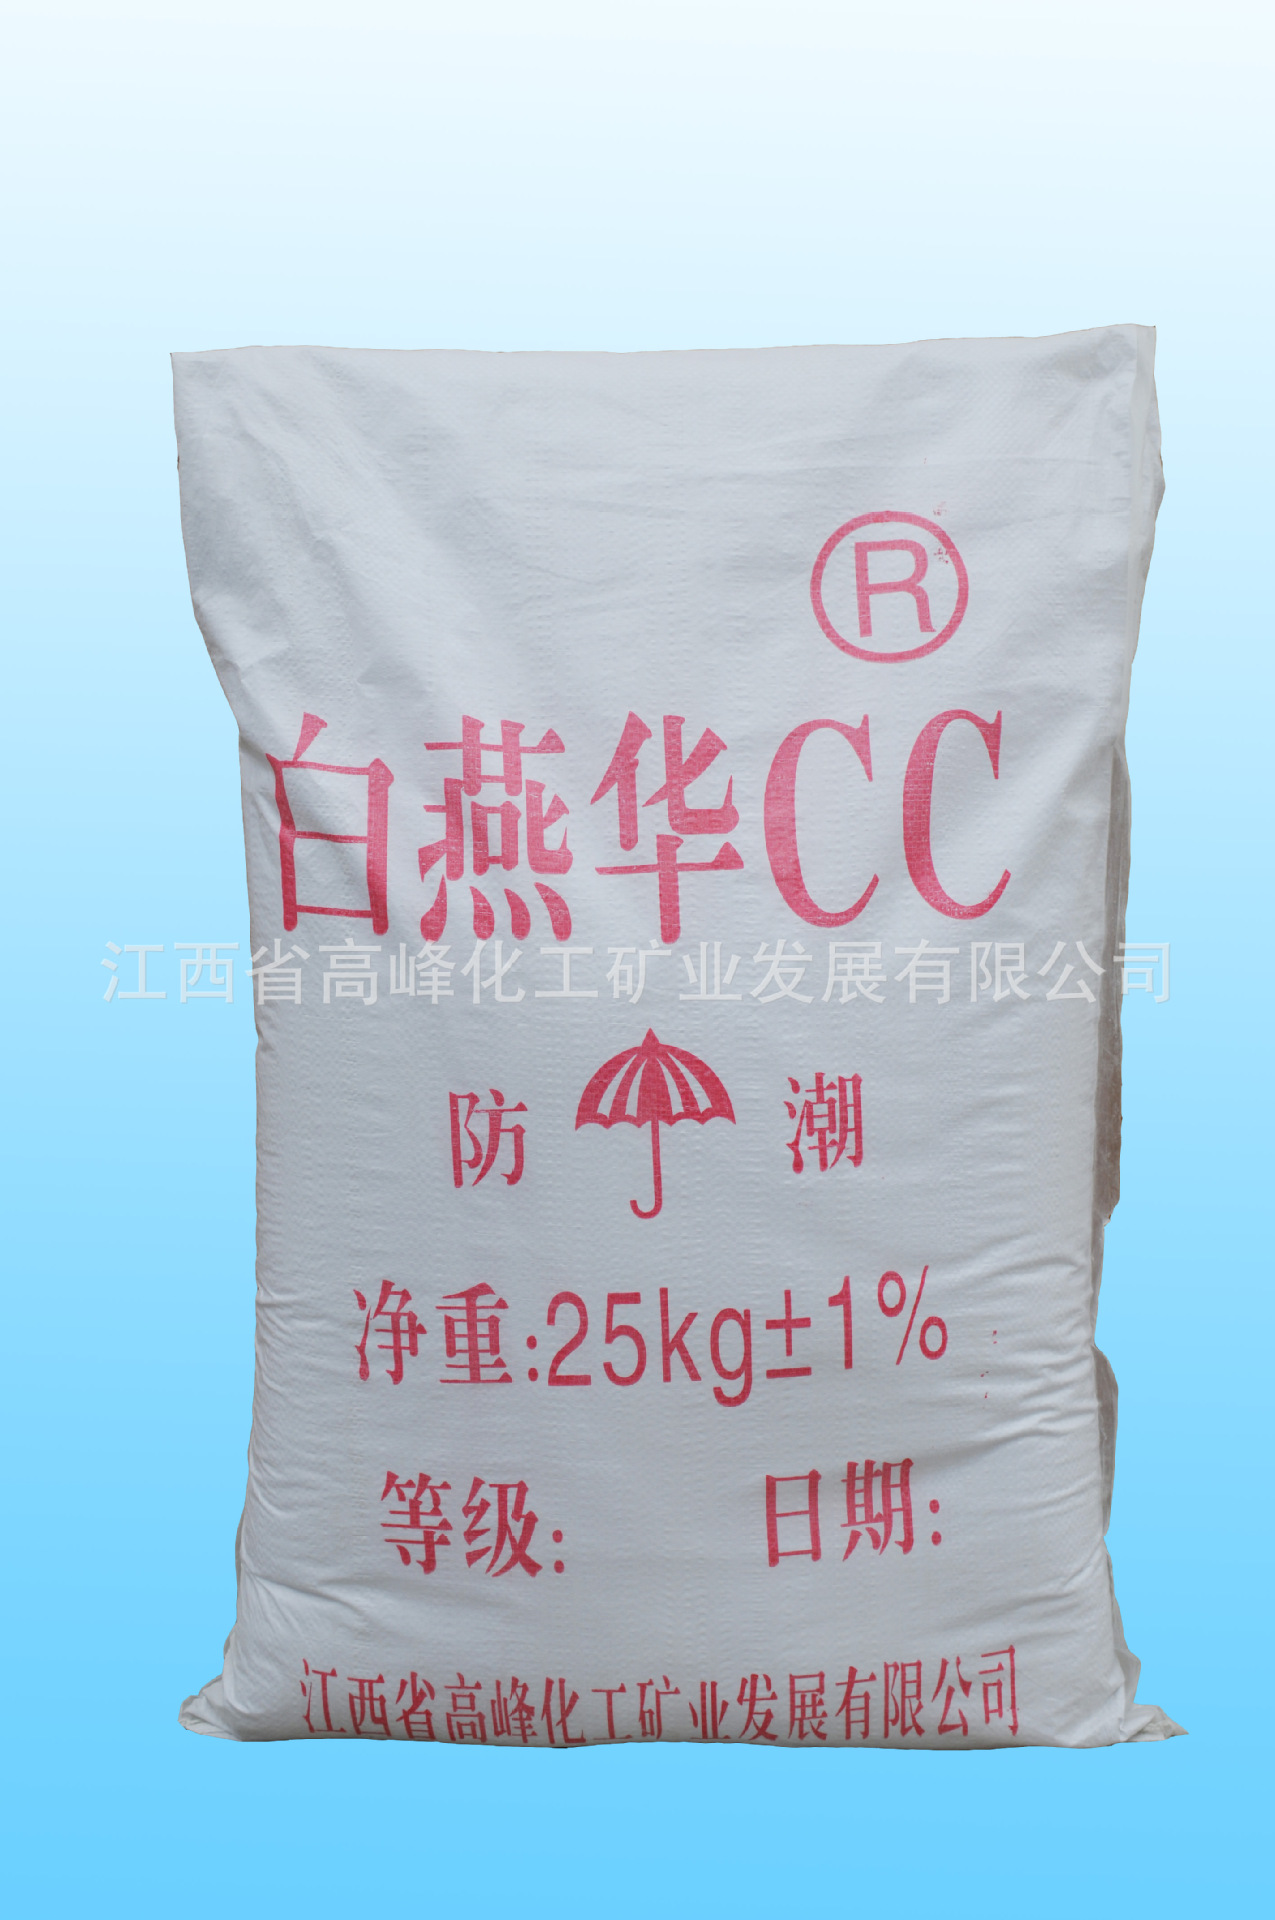 厂家直接供应白燕华CC胶质钙图片